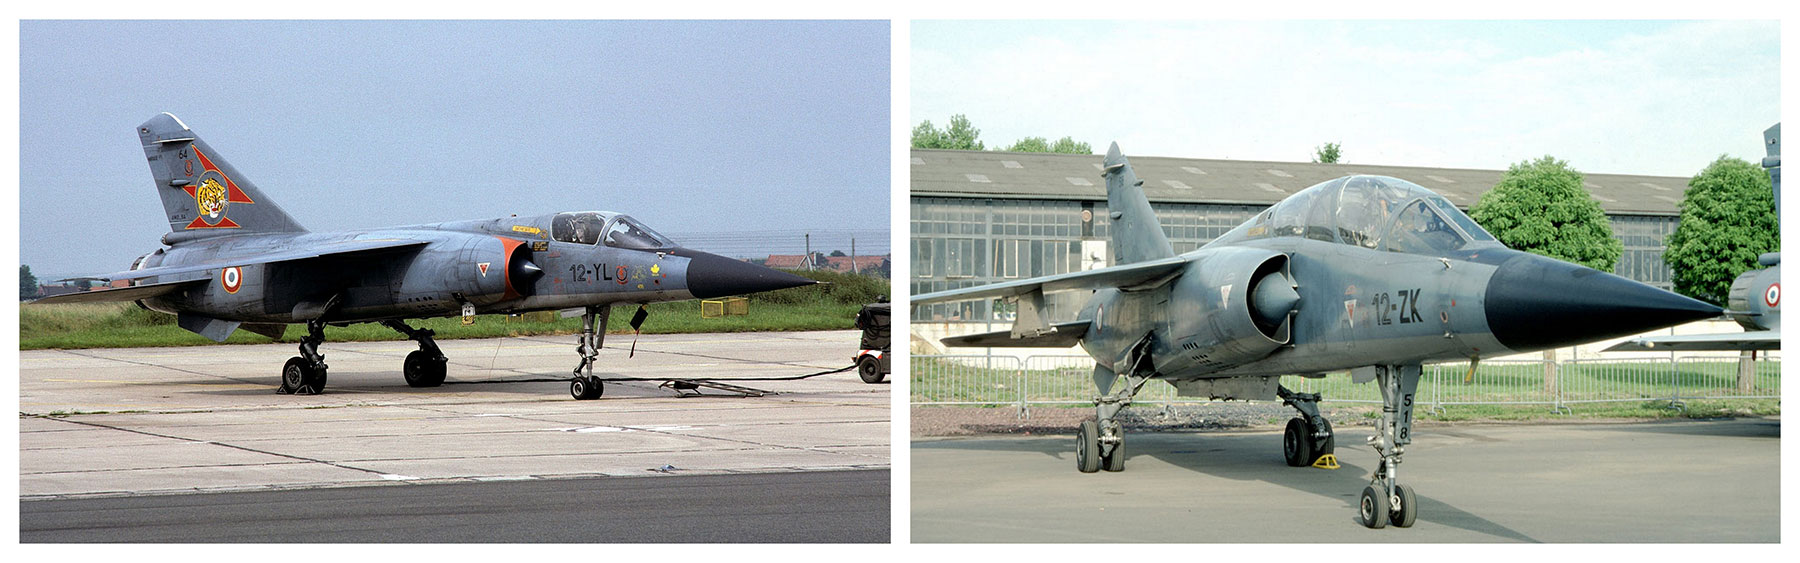 avion de chasse français Mirage F1